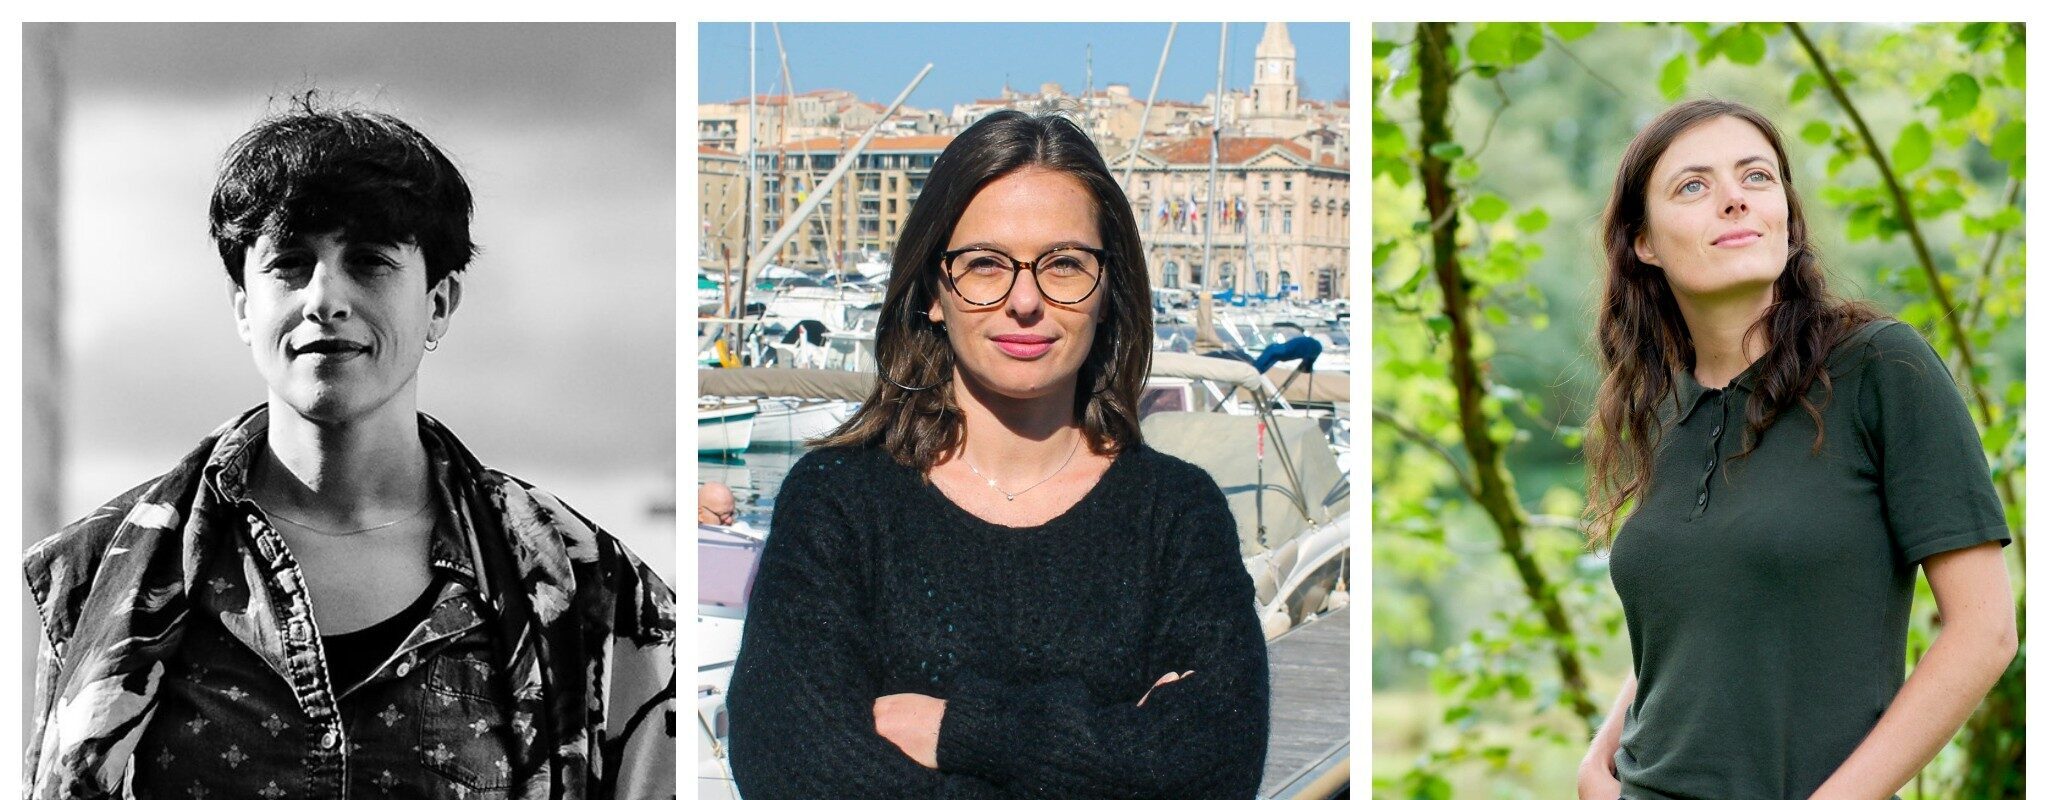 L’impact des médias indépendants locaux : Inès Léraud, Dalya Daoud et Violette Artaud à la librairie Kléber jeudi 10 mars